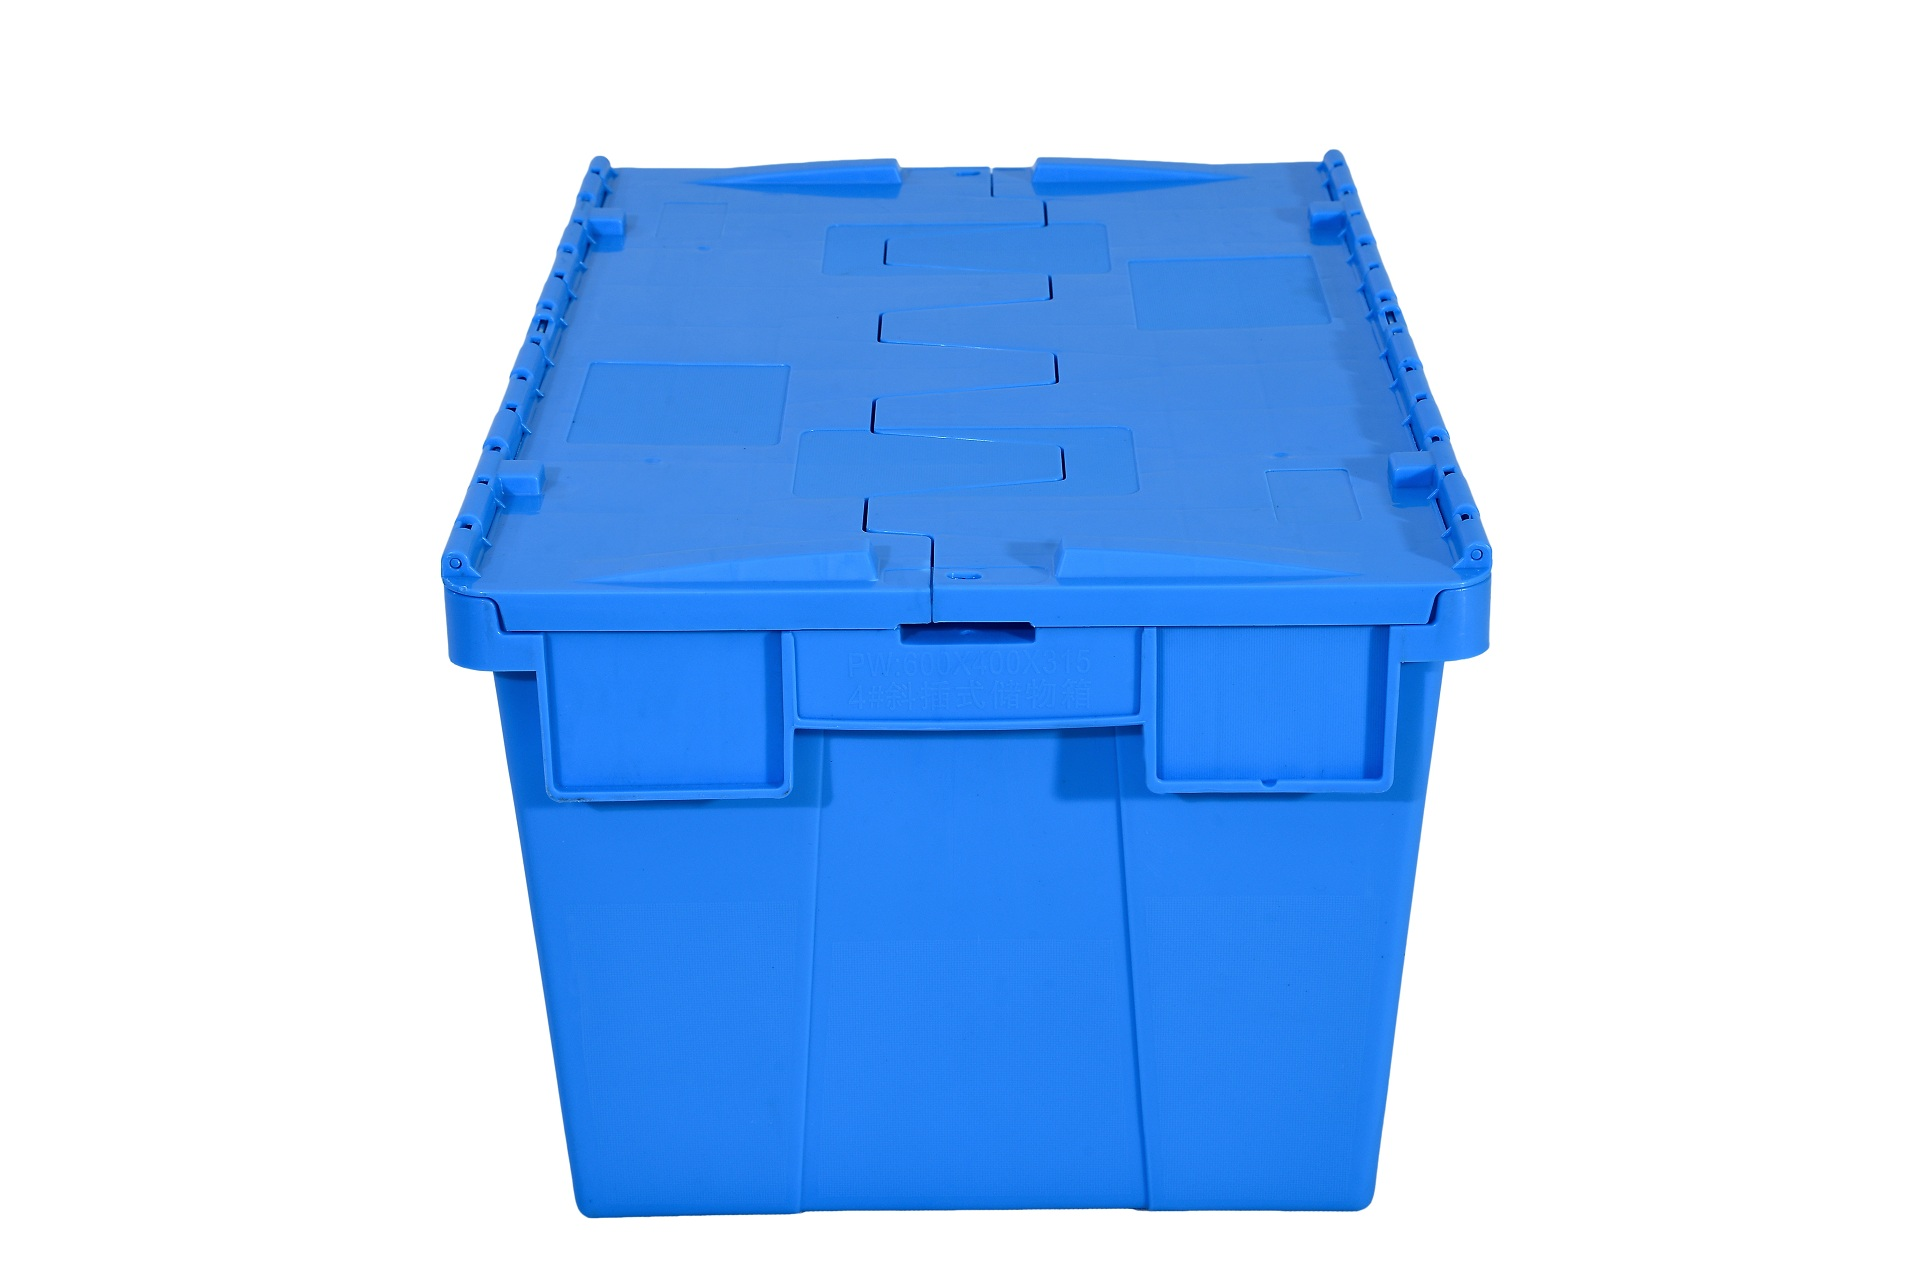 小榄供应360斜插式蓝色周转箱生产厂家-厂家报价单 蓝色可插式收纳周转箱厂家